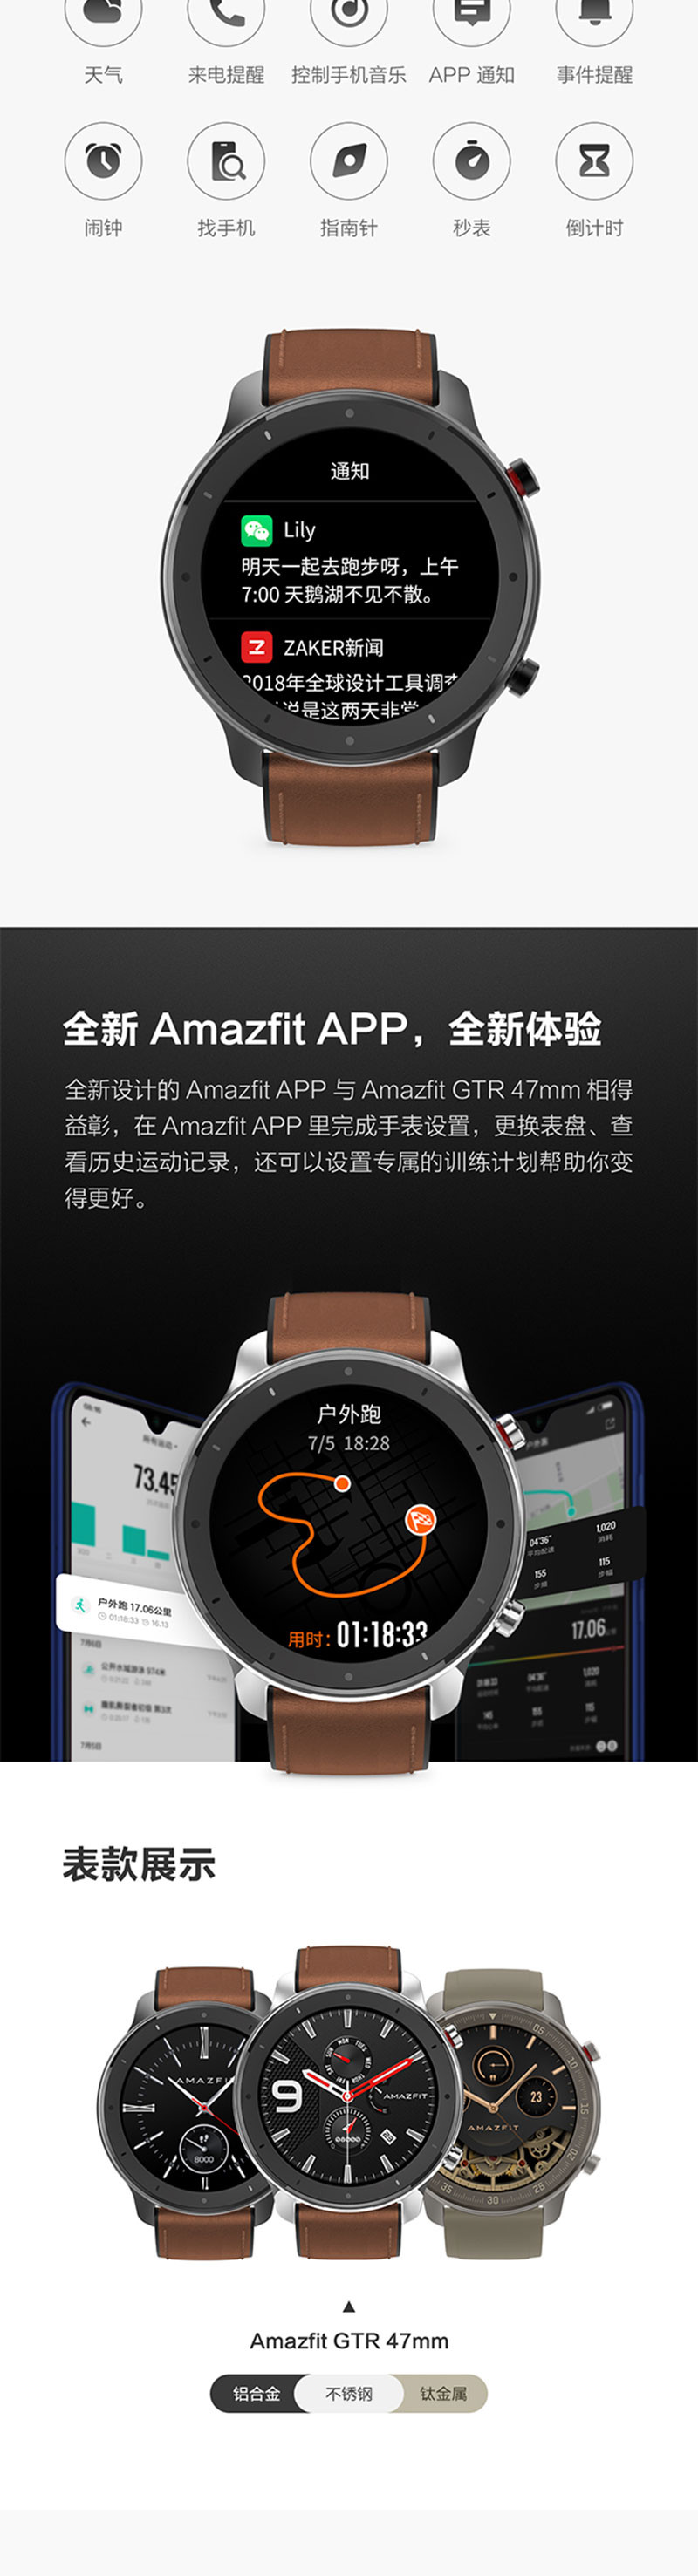 华米Amazfit GTR智能手表智能运动手表24天续航50米防水NFC